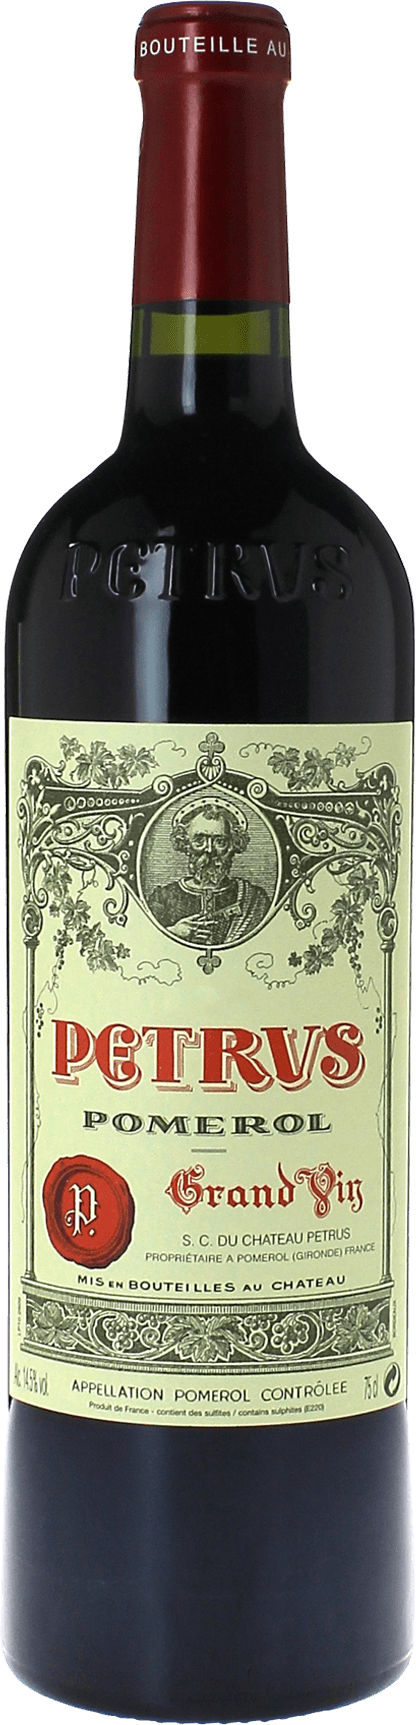 Petrus 1987  Pomerol, Bordeaux rouge